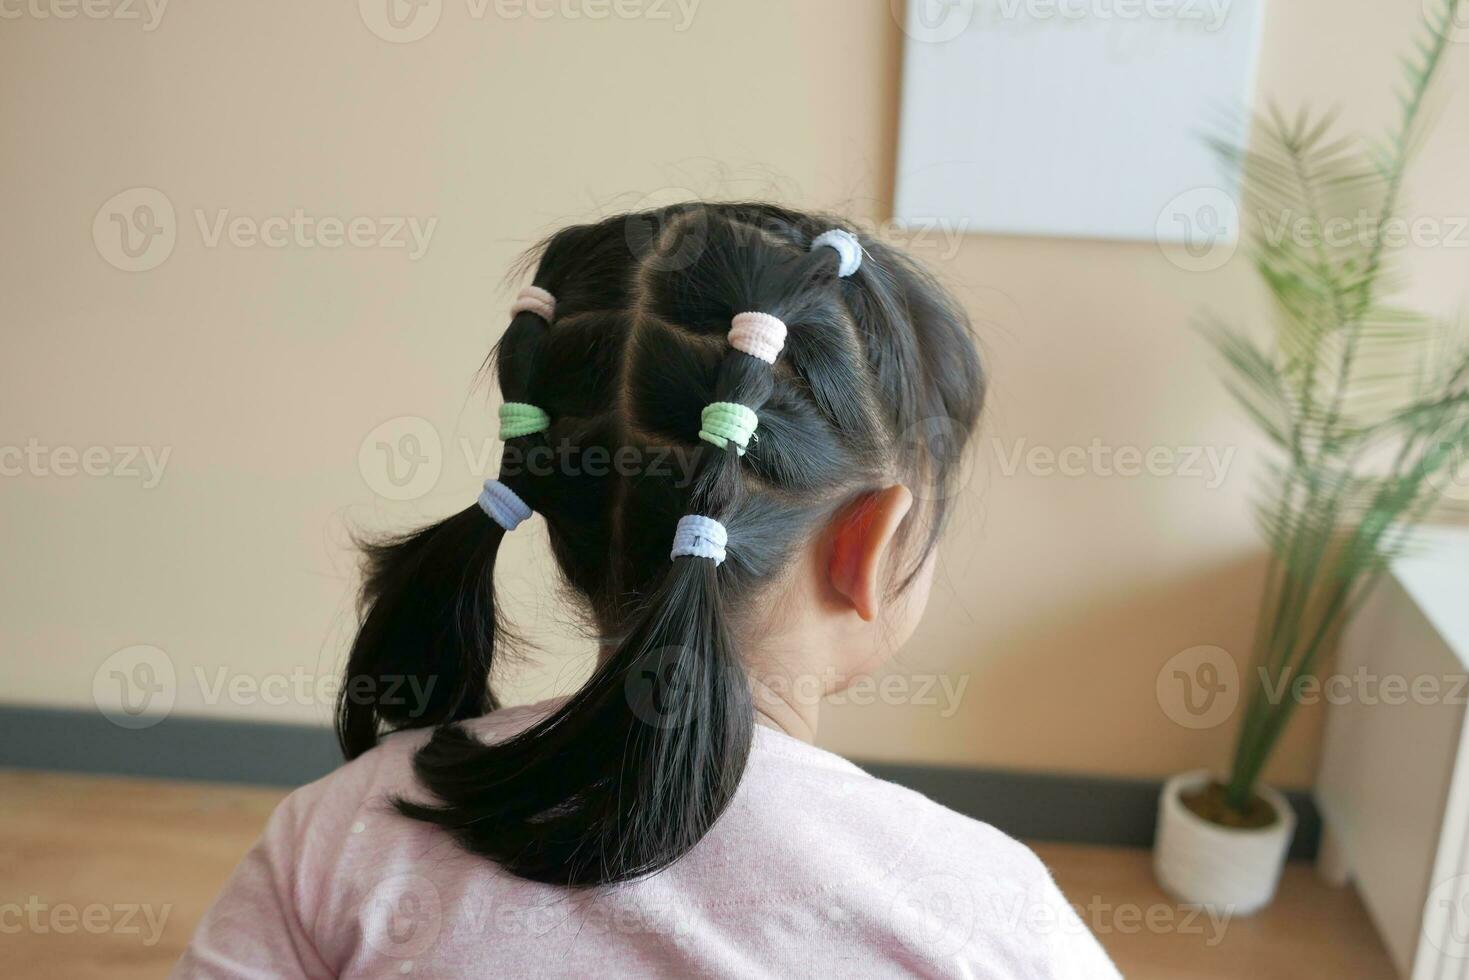 hermosa cinta es atado en un niño pelo foto